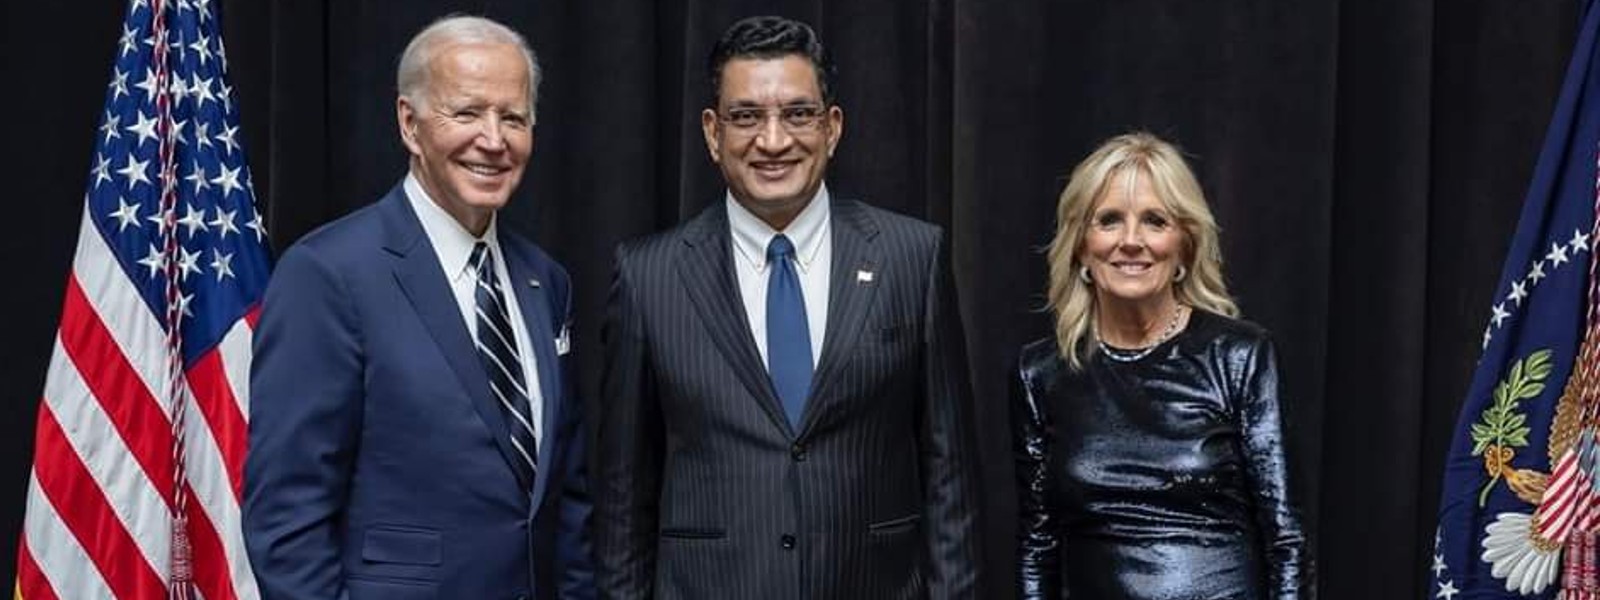 Ali Sabry meets Joe Biden in NY